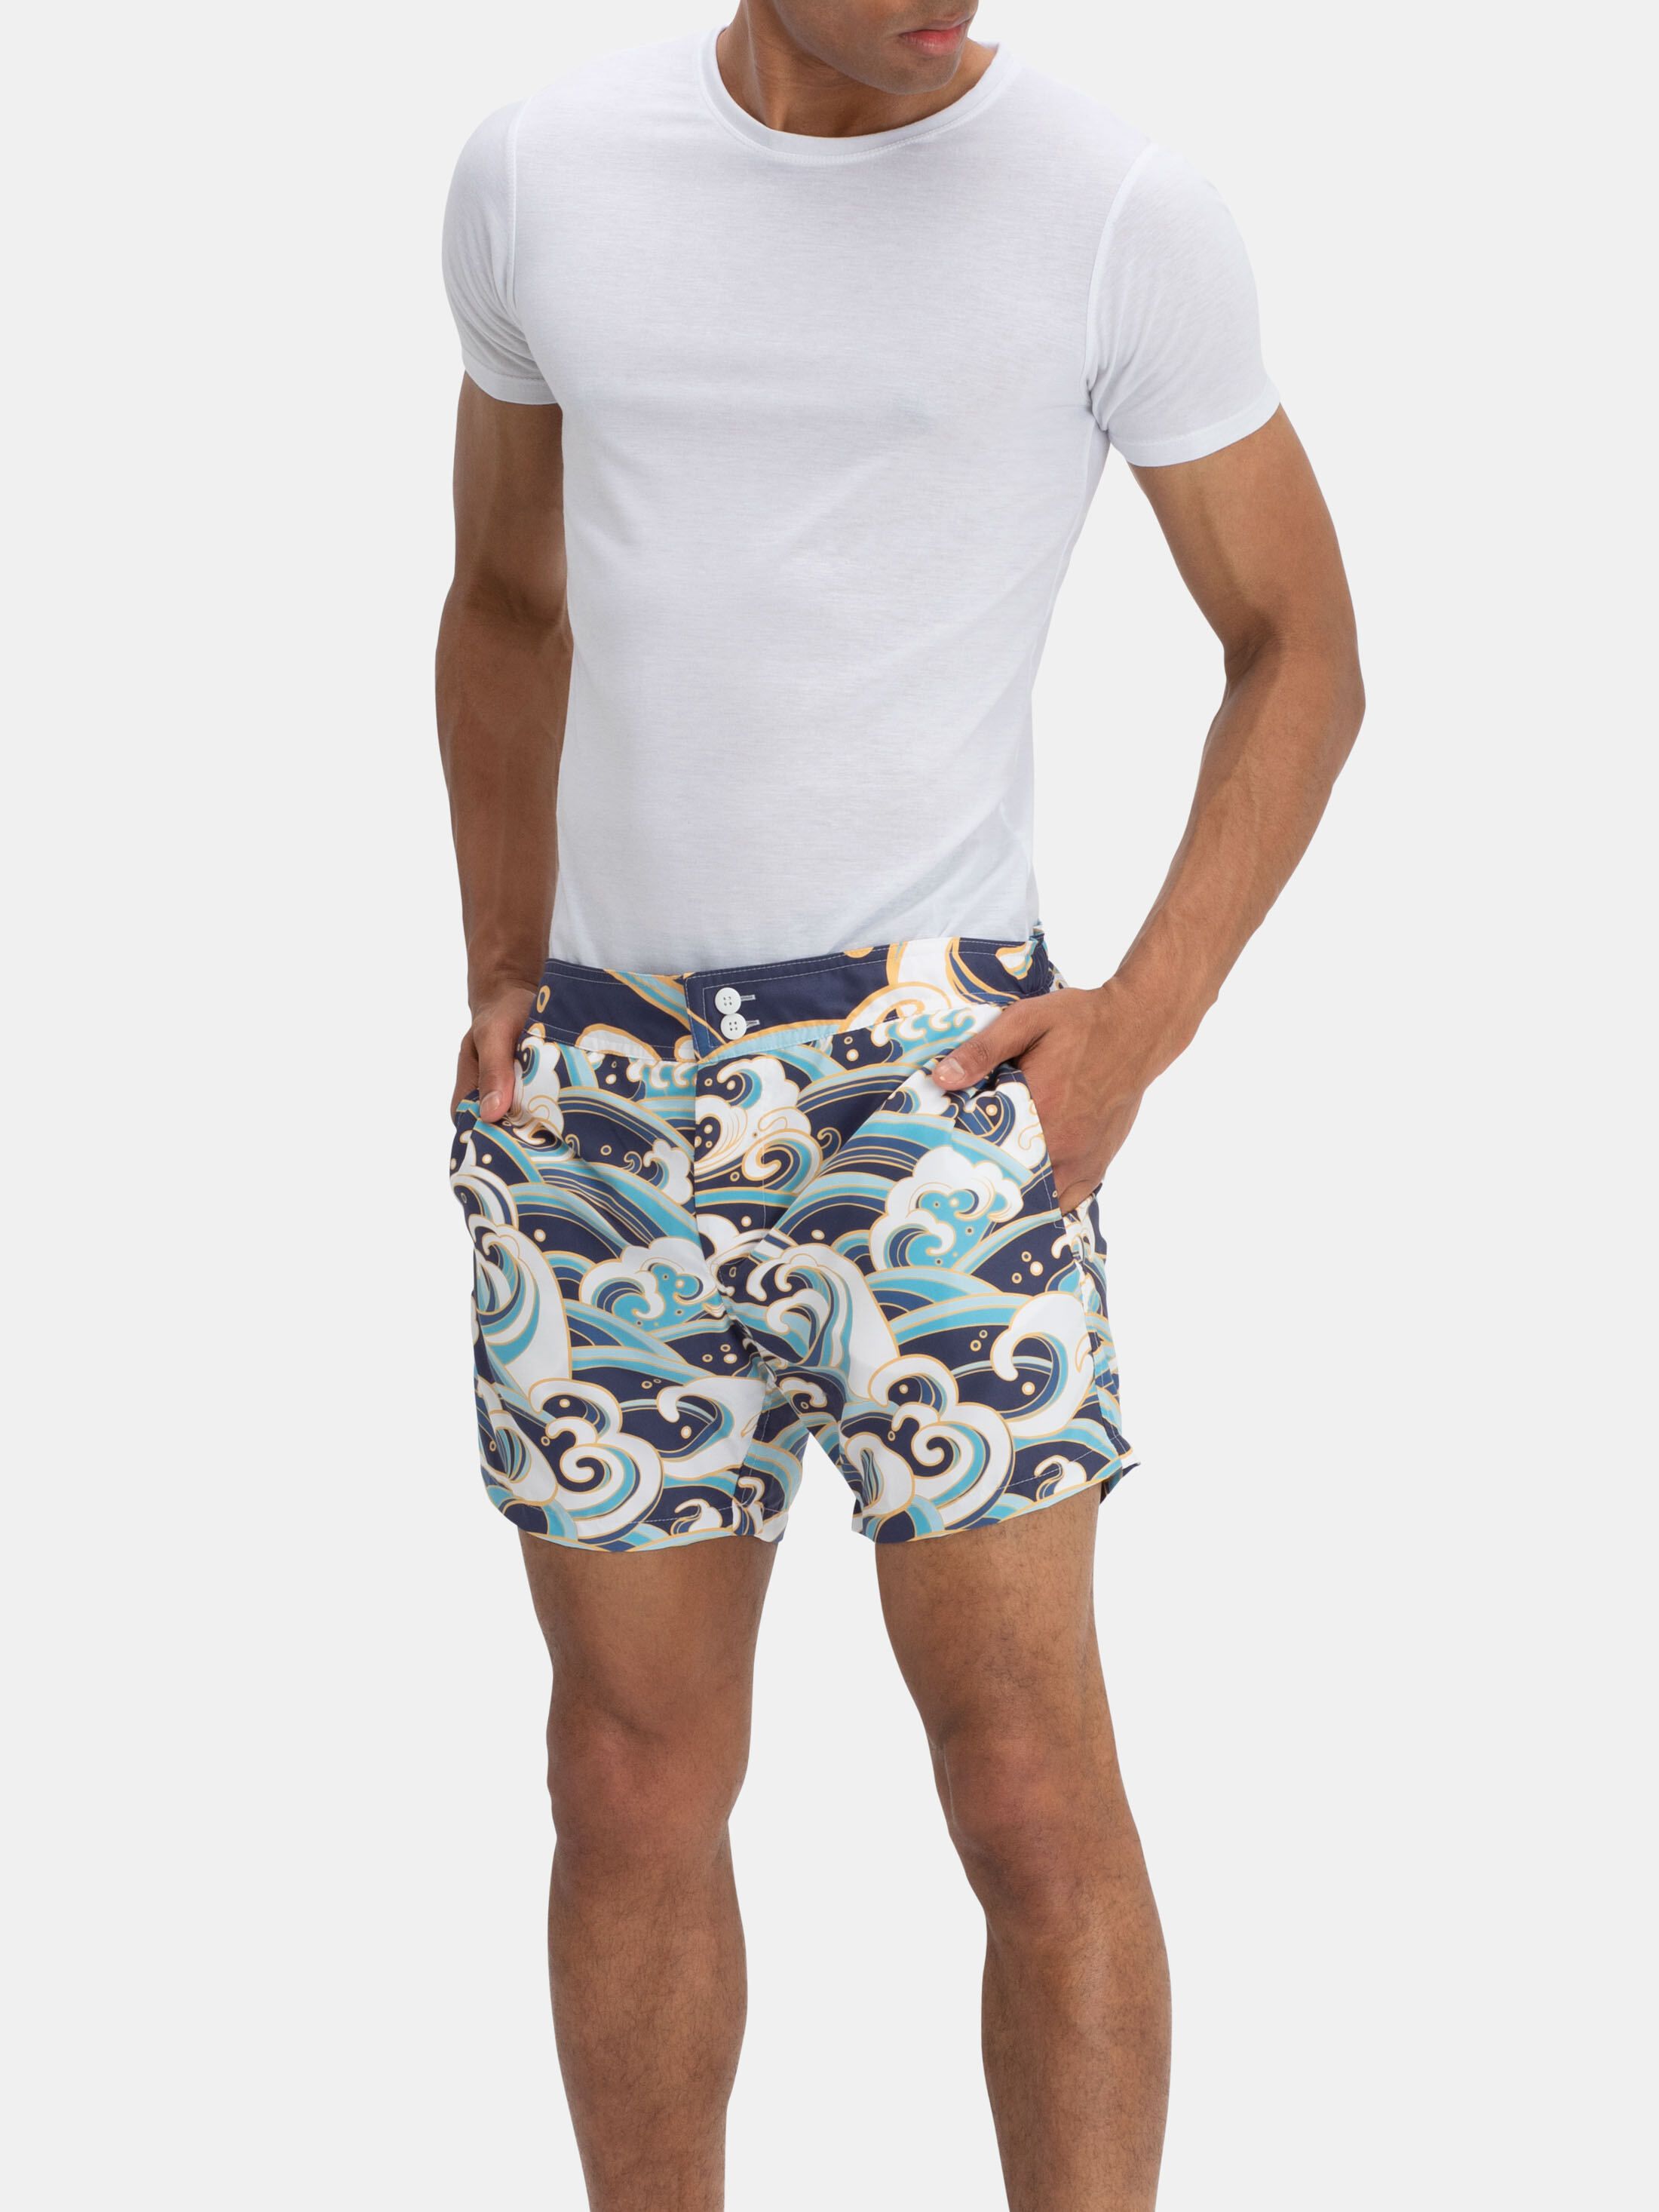 custom shorts uk for men